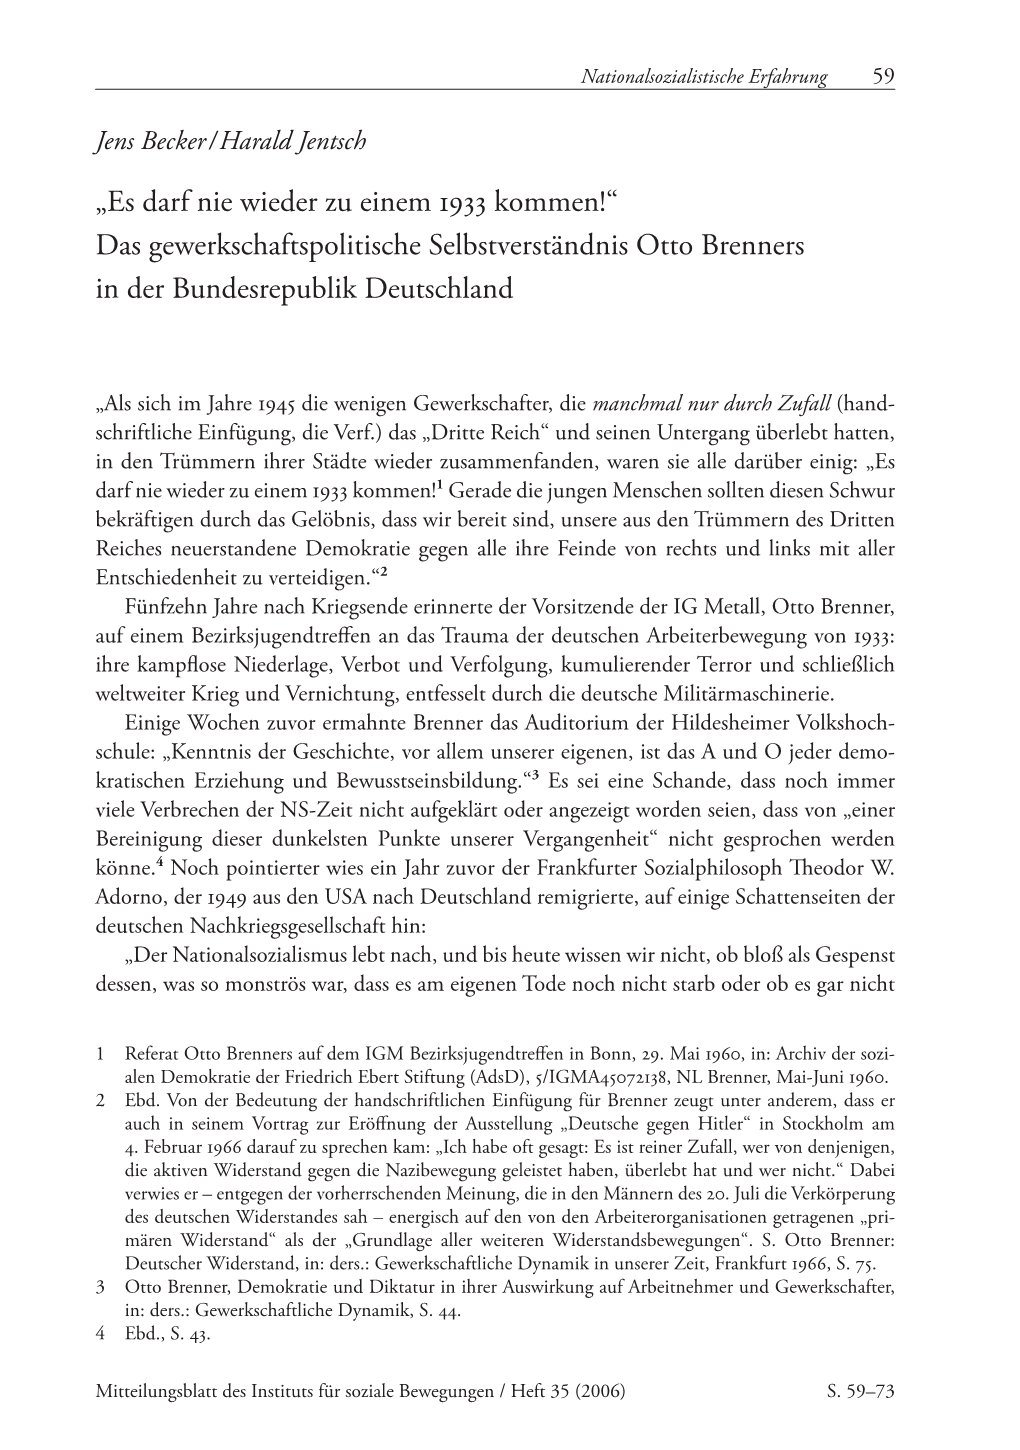 Das Gewerkschaftspolitische Selbstverständnis Otto Brenners in Der Bundesrepublik Deutschland